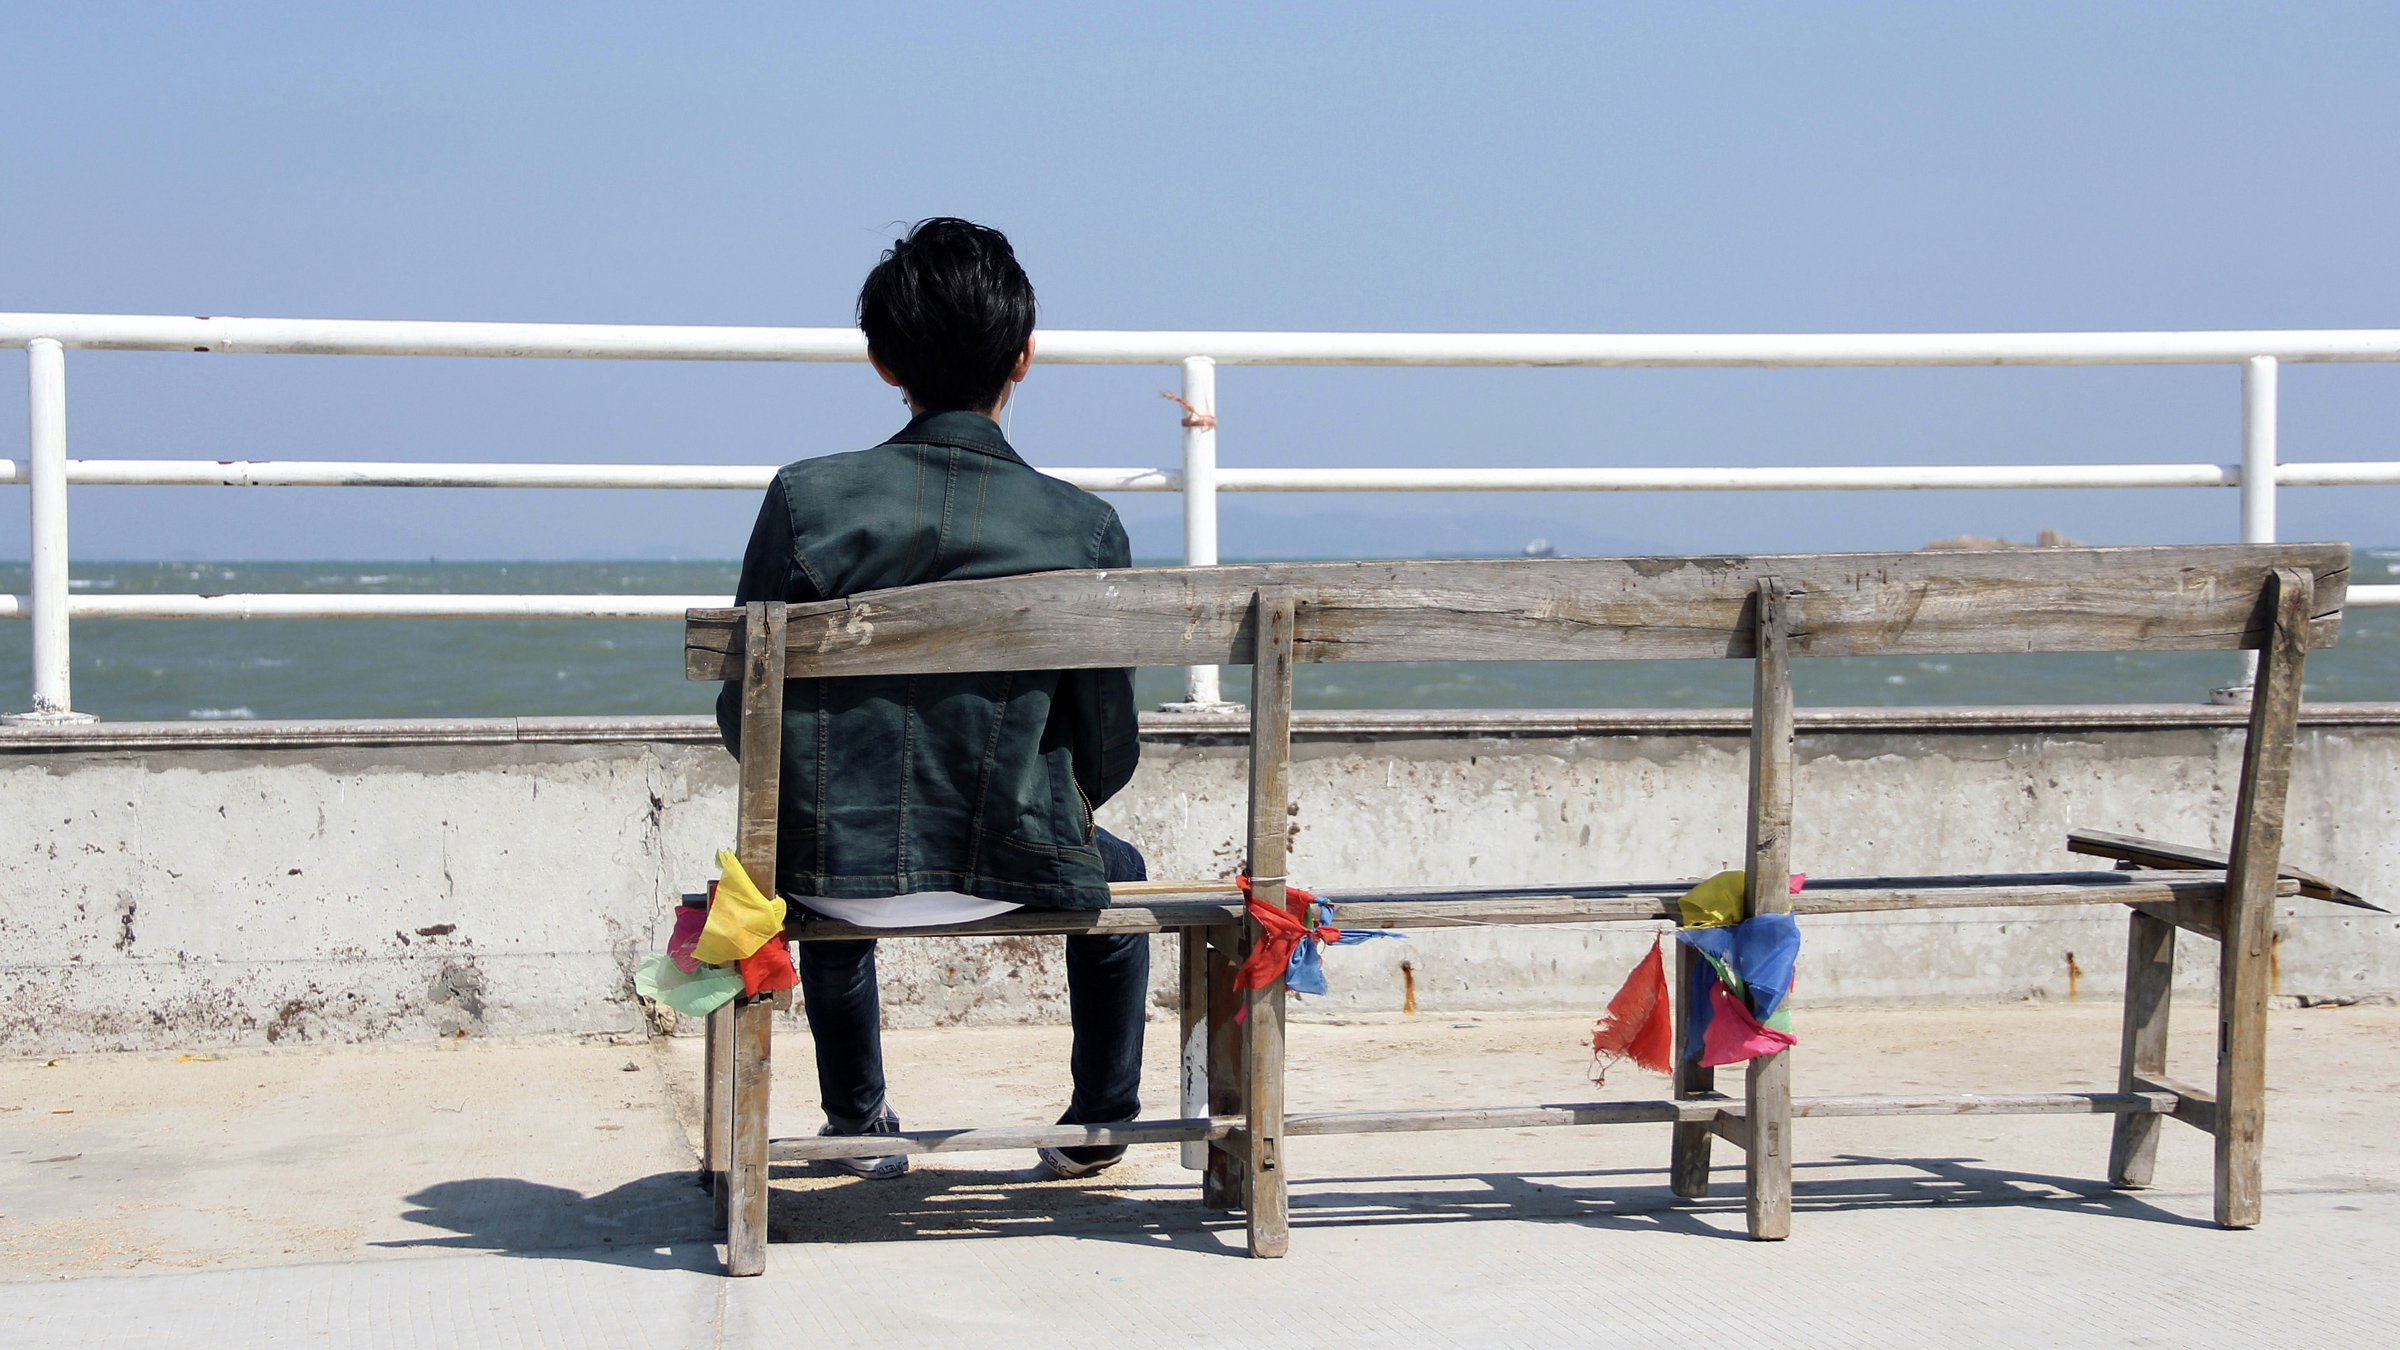 Pohled zezadu: chlapec sedí na lavičce na přímořské promenádě